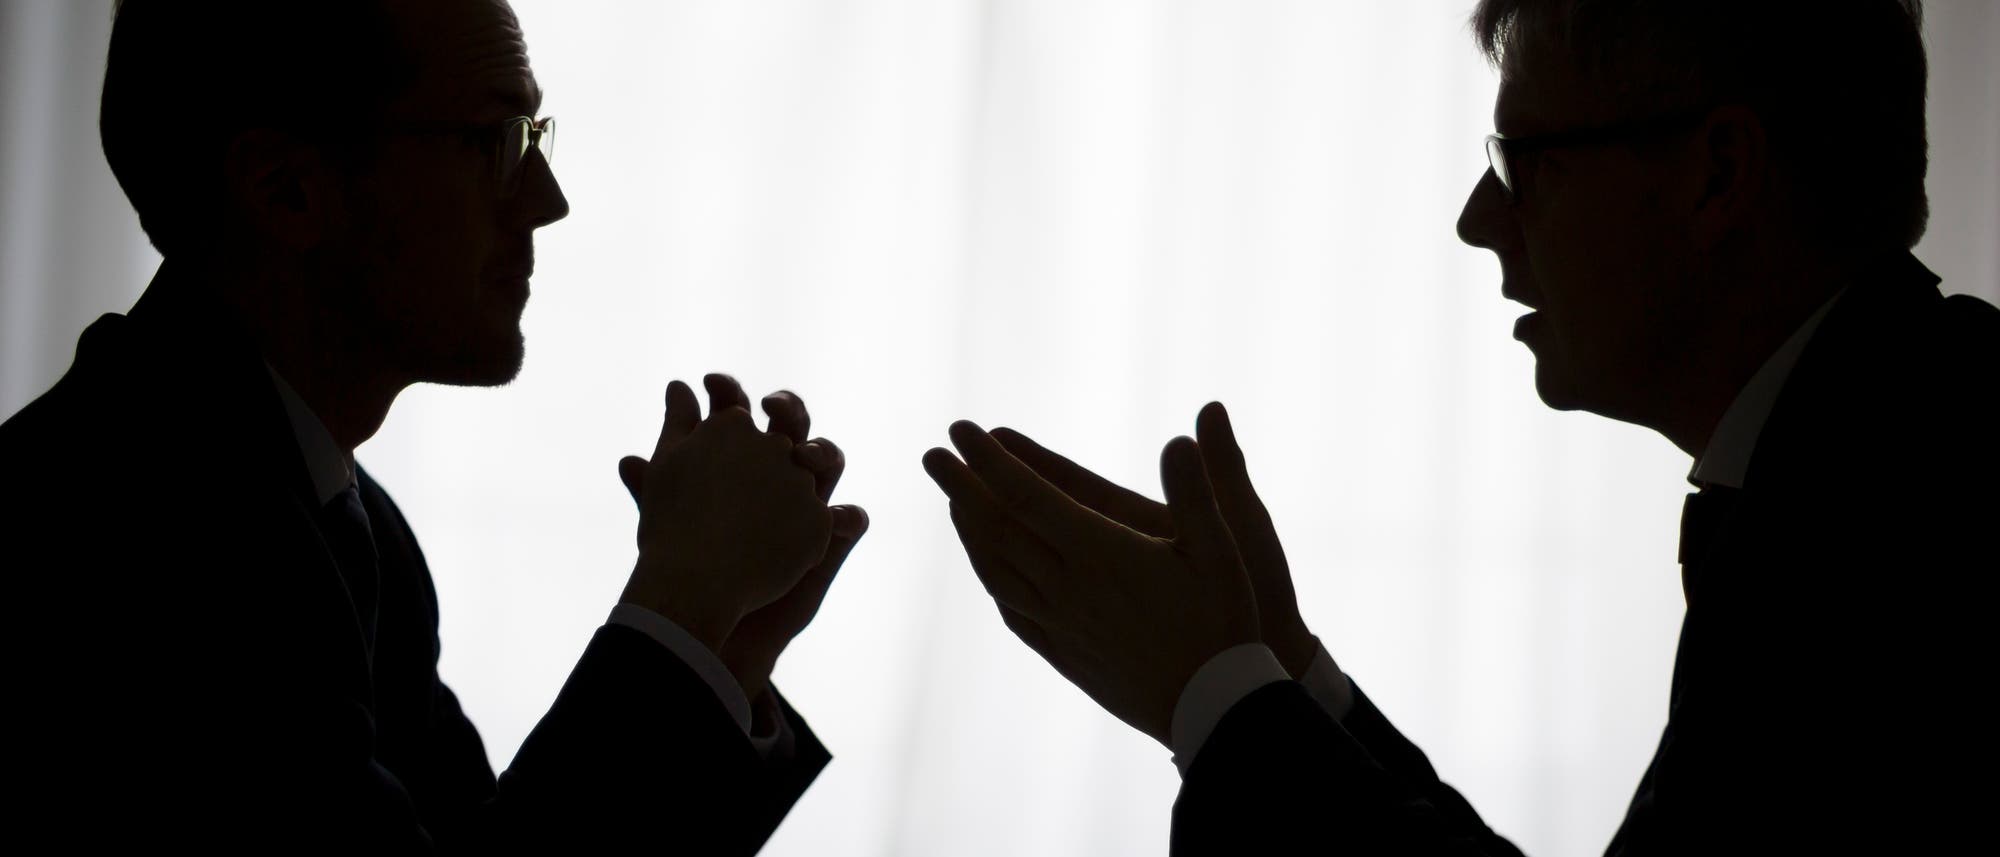 Silhouette zweier gestikulierender Männer im Gespräch vor hellem Hintergrund